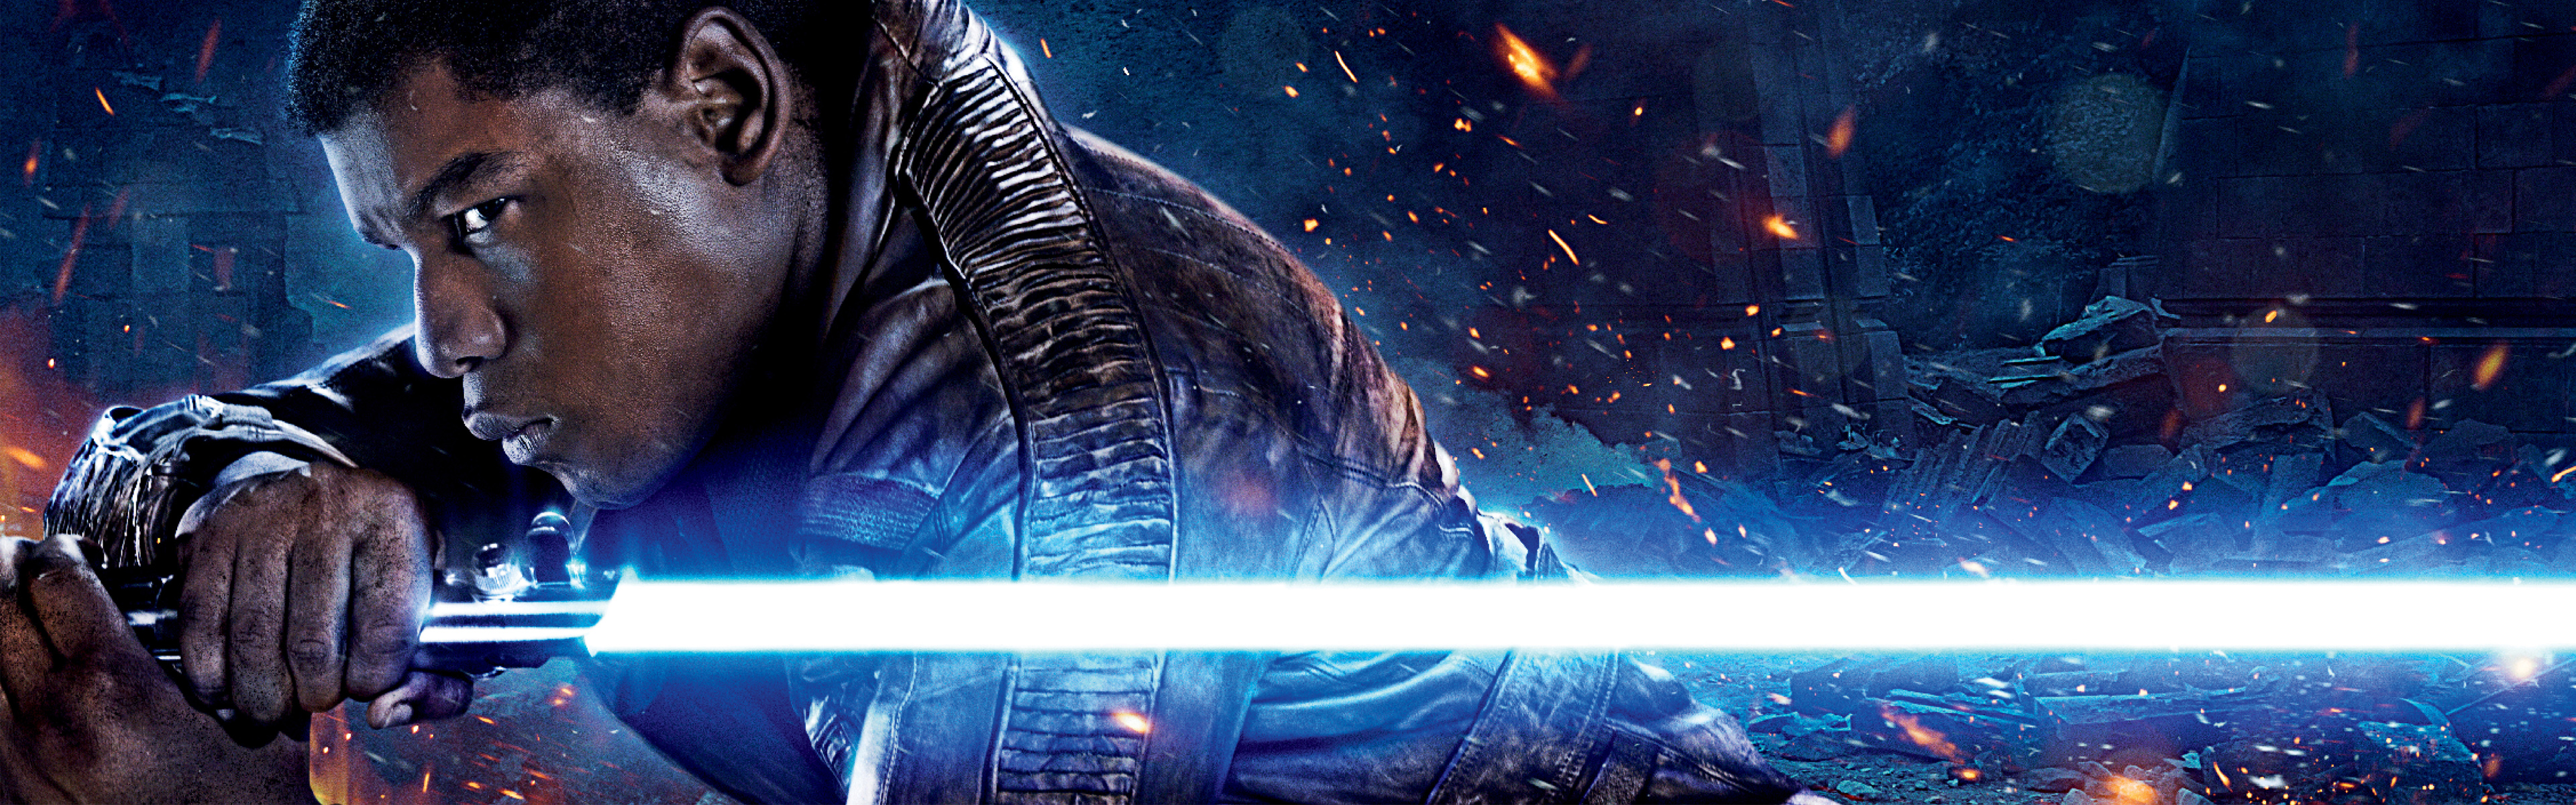 Star Wars Episode Vii The Force Awakens John Boyega Finn Star Wars Star Wars Lightsaber 3840x1200